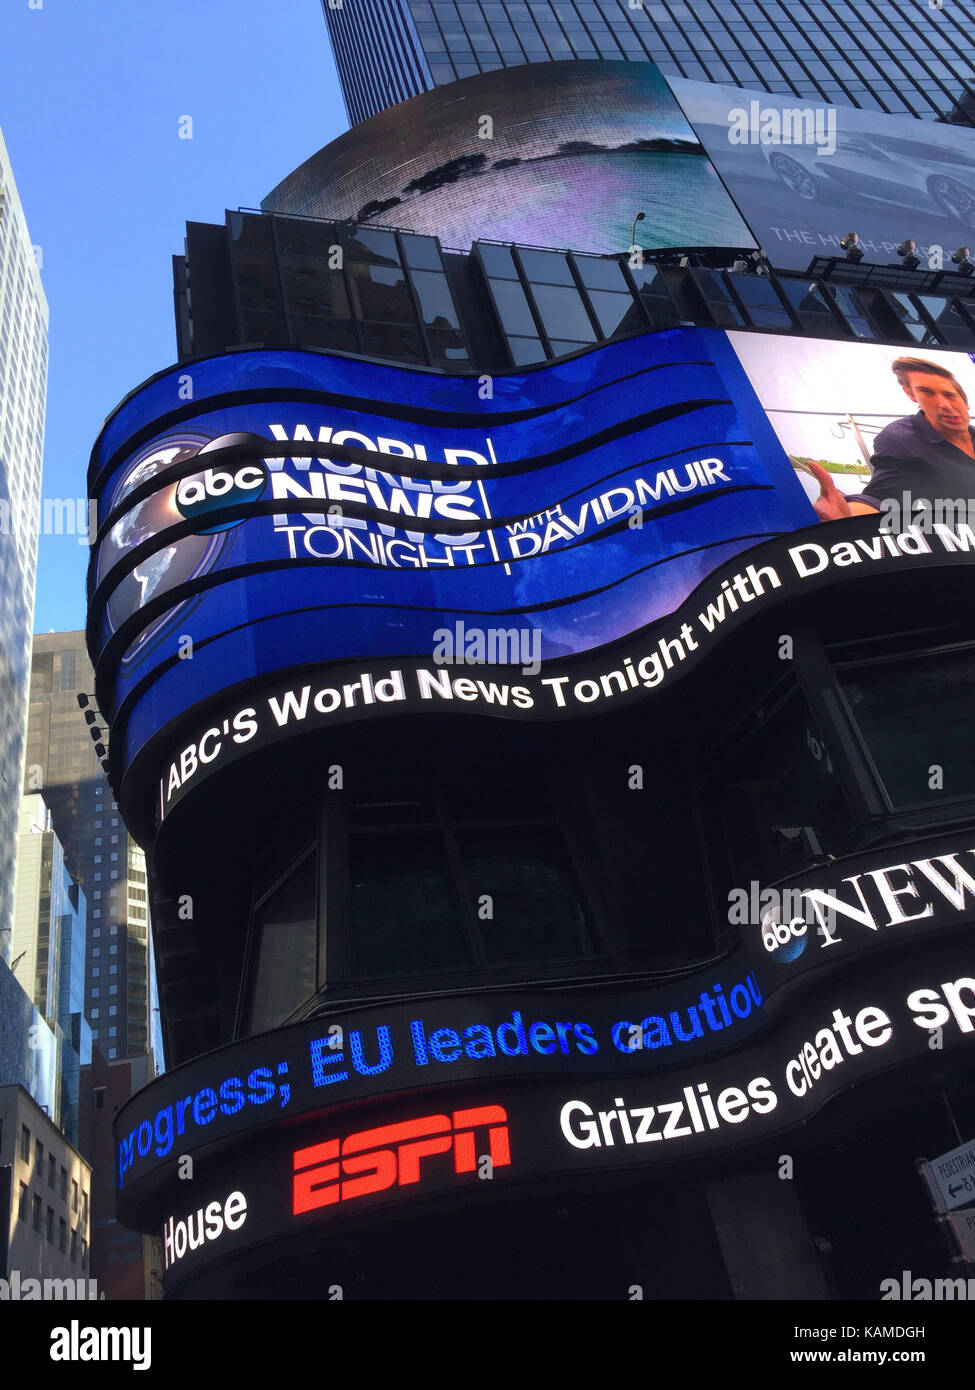 Enrouler autour de déménagement Billboard at Réseau de télévision ABC Studios à Times Square, New York, USA Banque D'Images